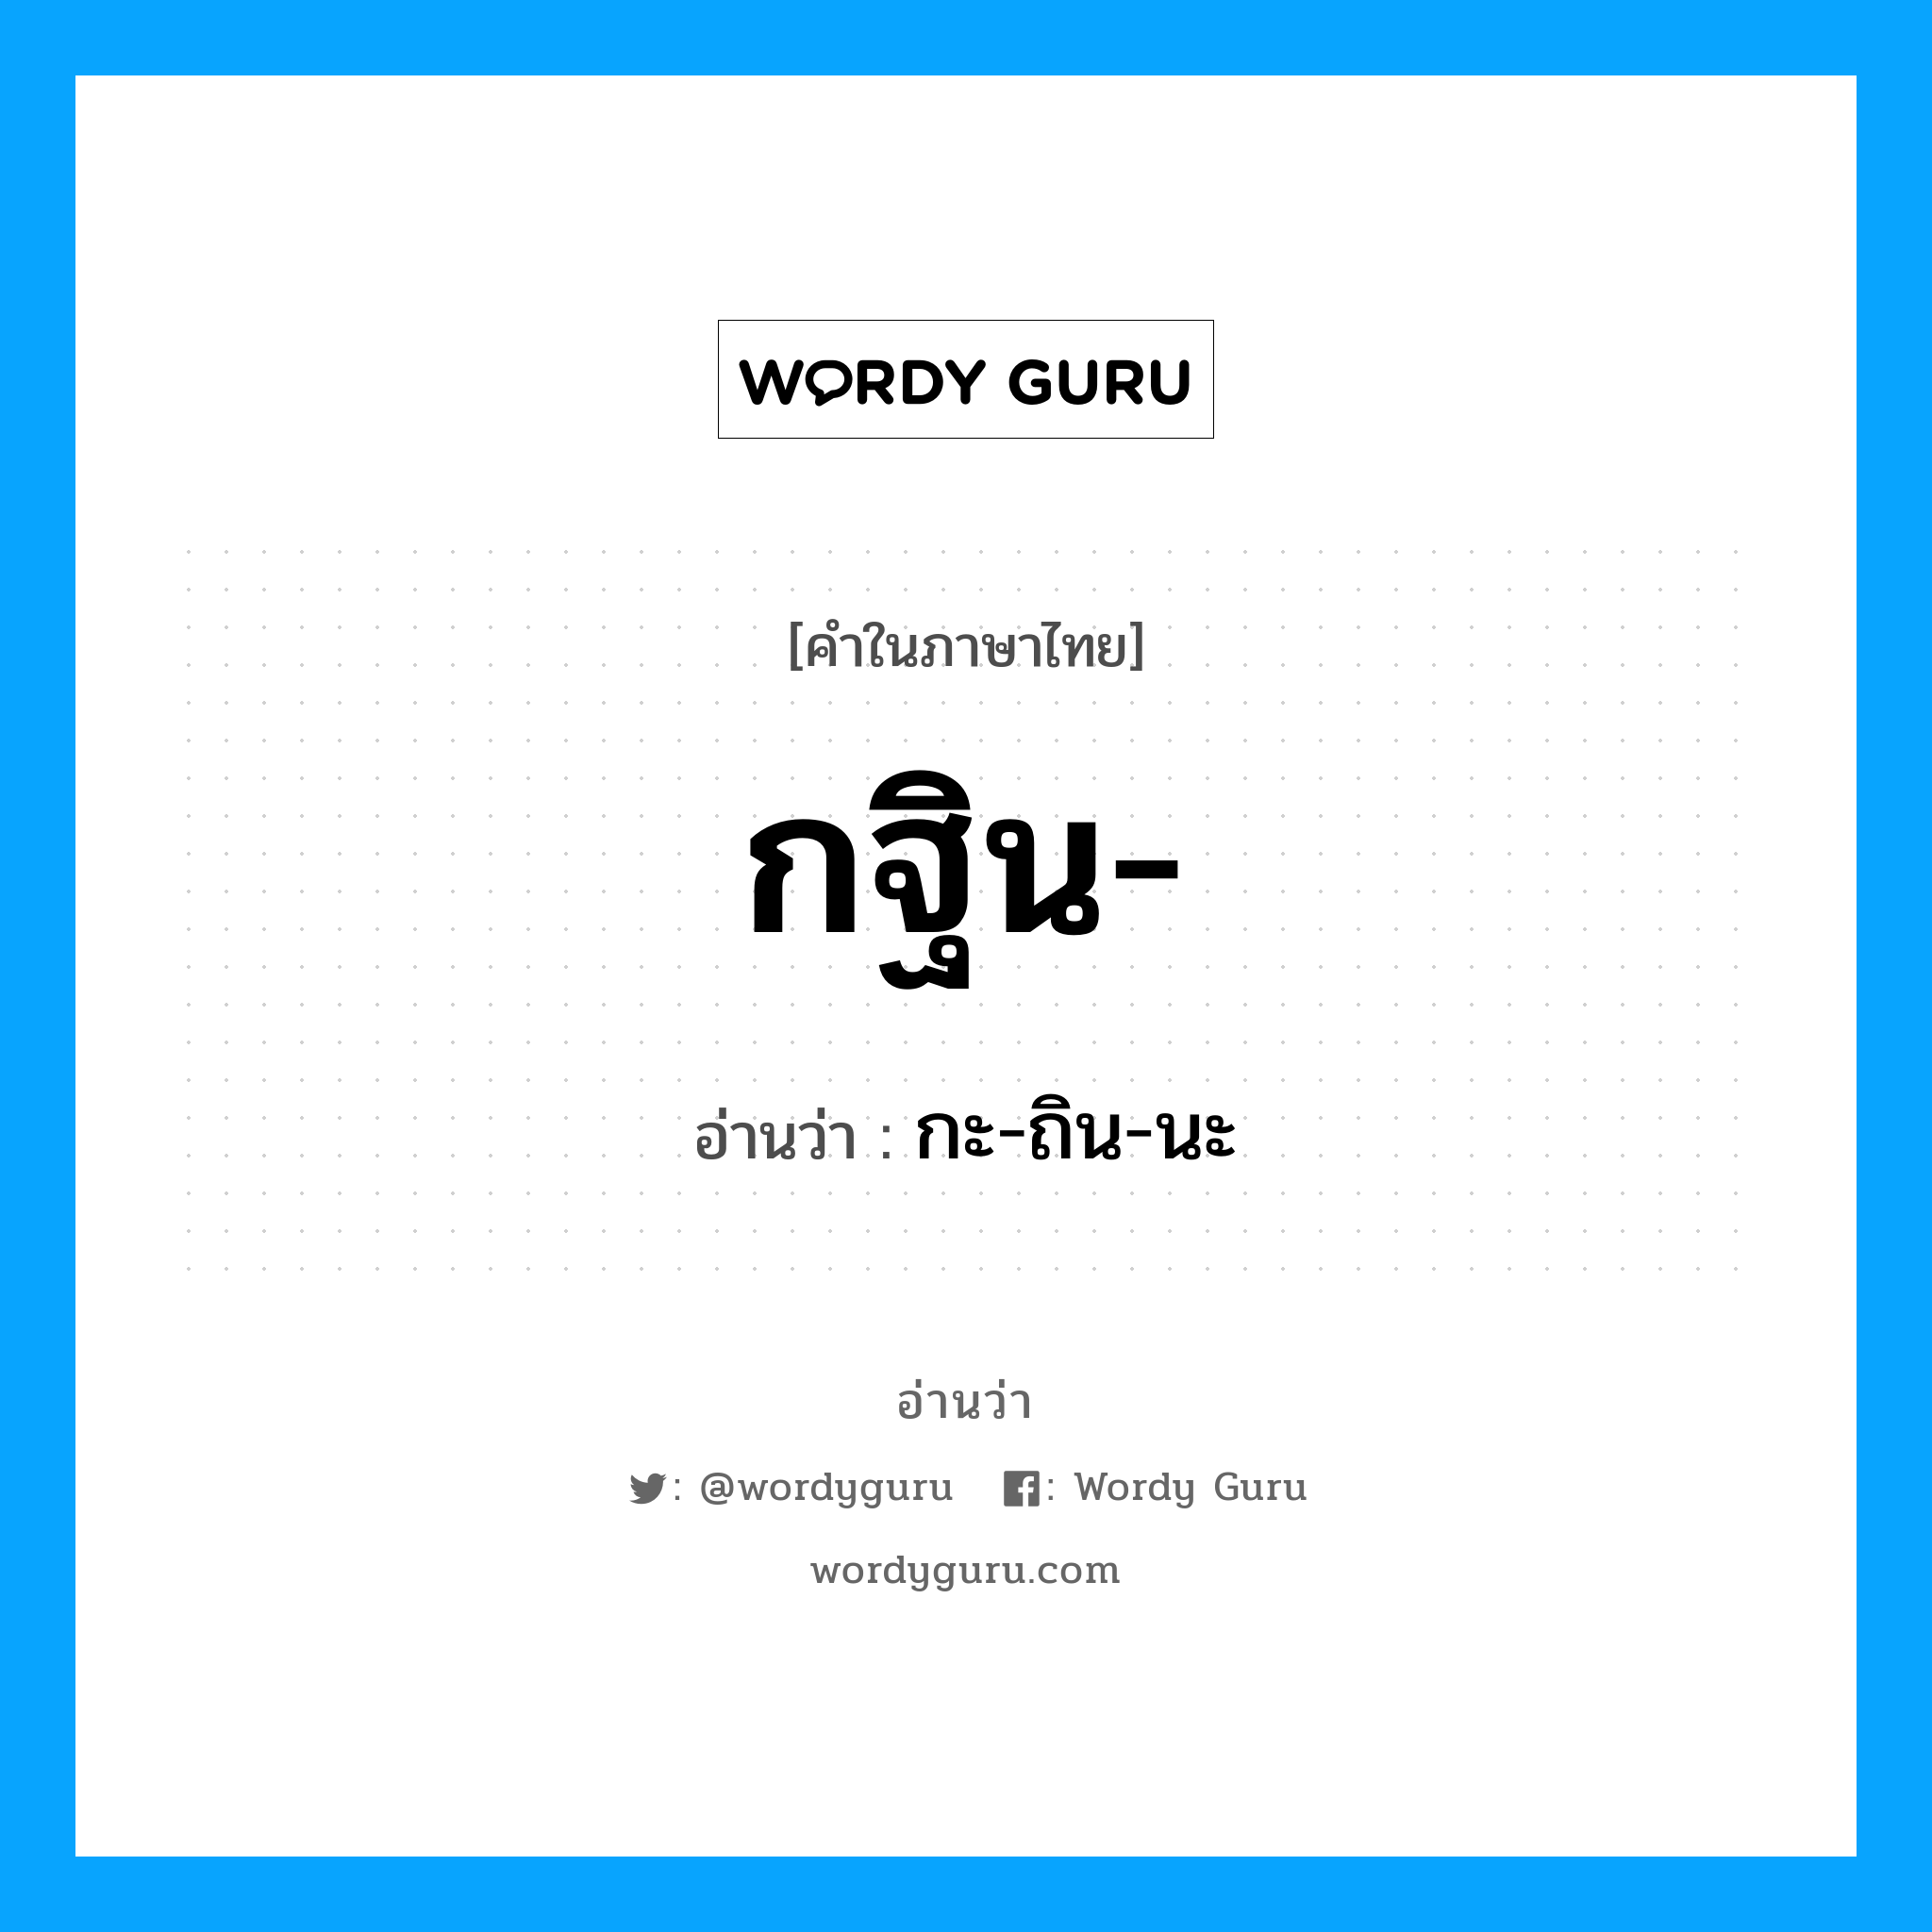 กะ-ถิน-นะ เป็นคำอ่านของคำไหน?, คำในภาษาไทย กะ-ถิน-นะ อ่านว่า กฐิน-